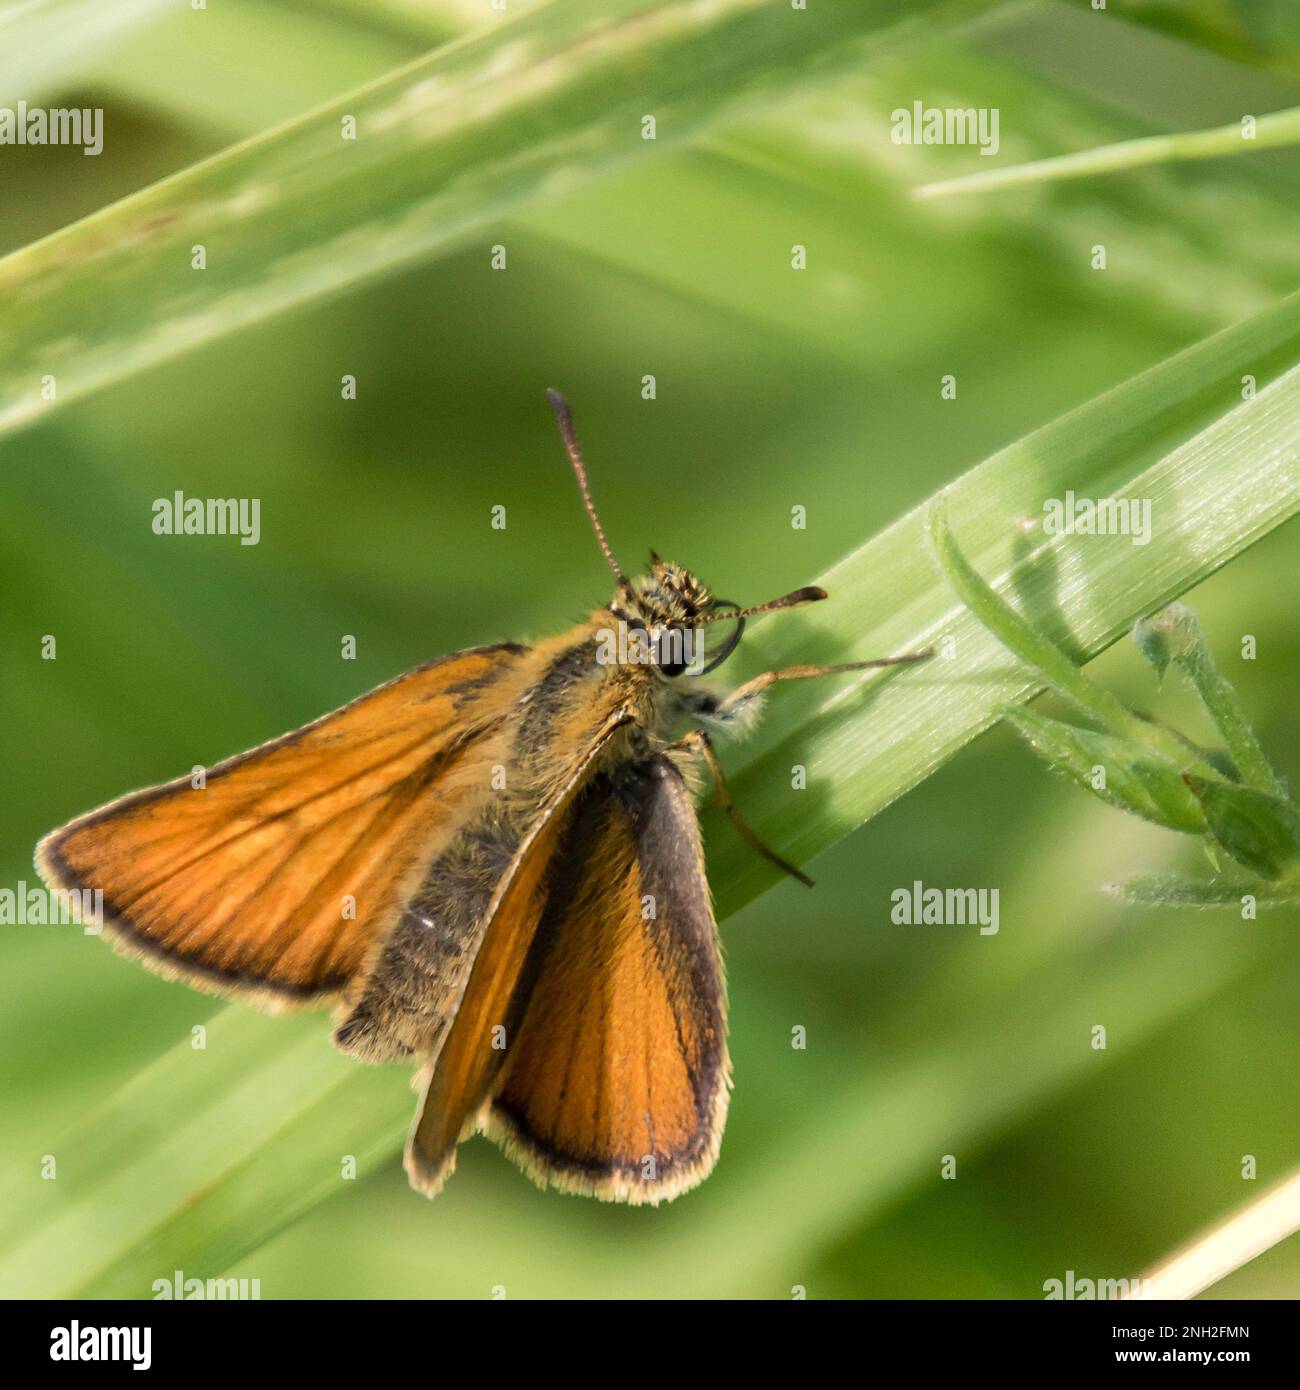 Dickkoppalter, Schmetterling auf Grashalm Foto Stock